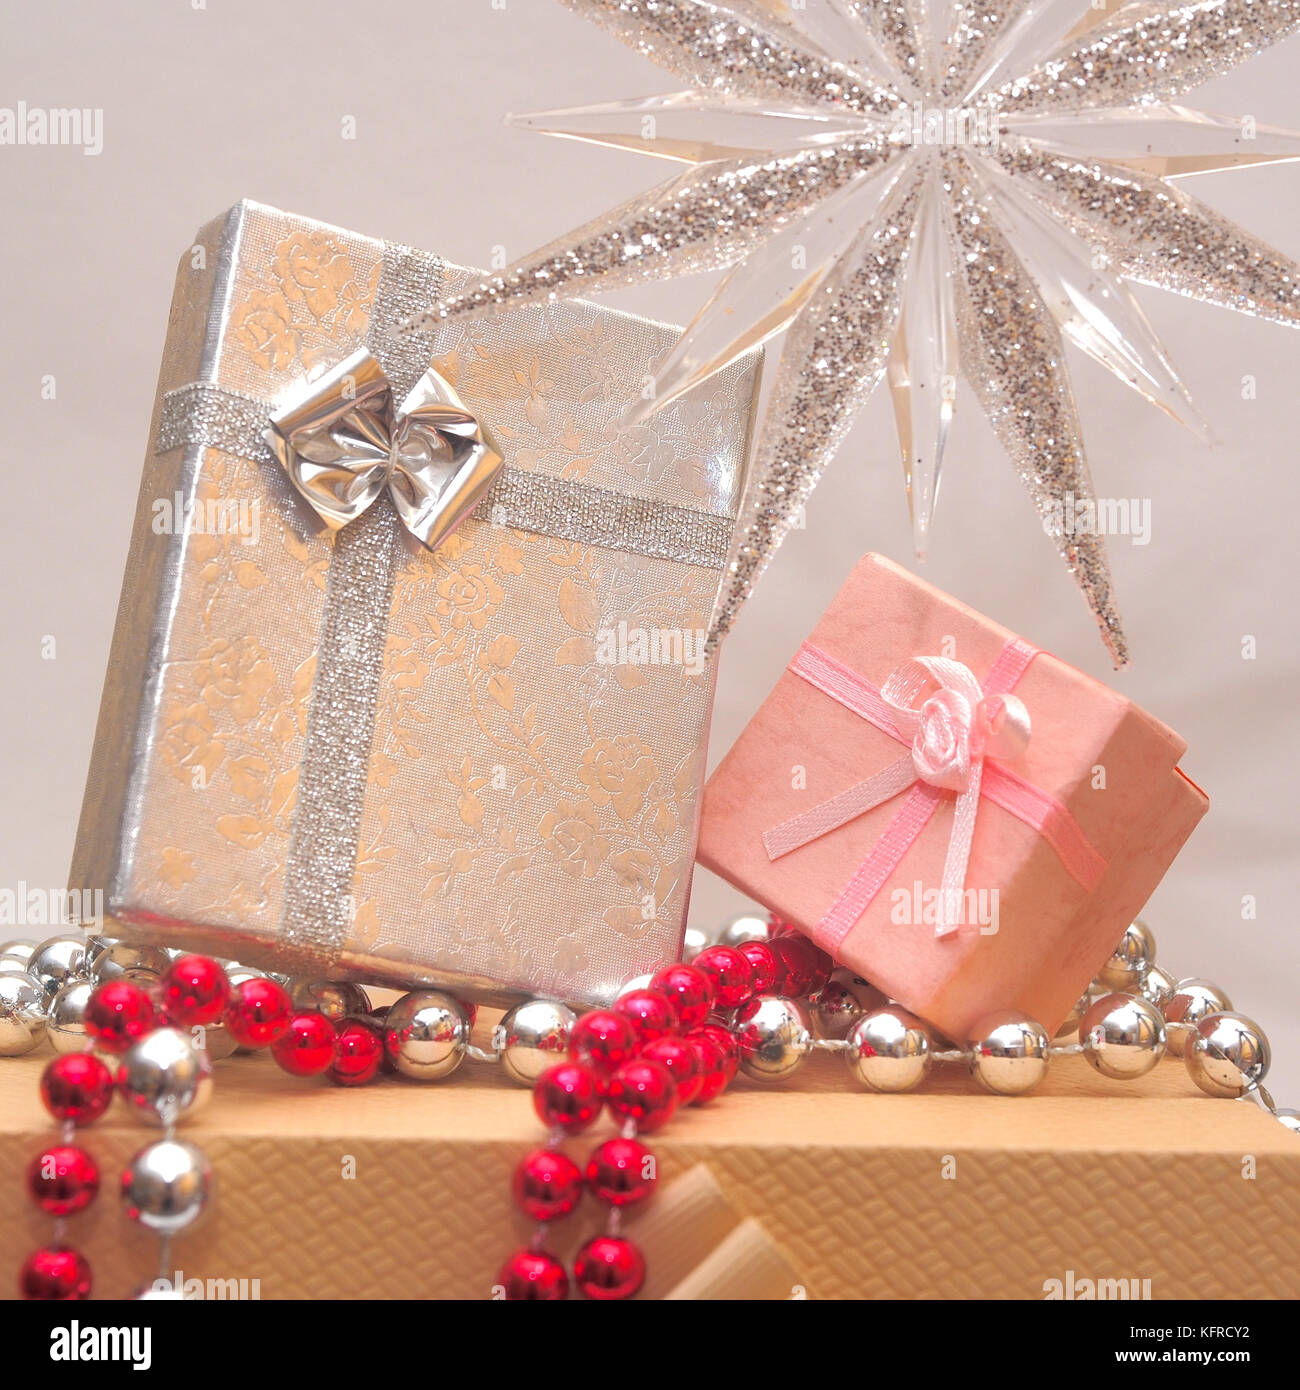 Foto der Weihnachtsgeschenke oder Geschenke verpackt - Geschenk mit Schleife verpackt Stockfoto